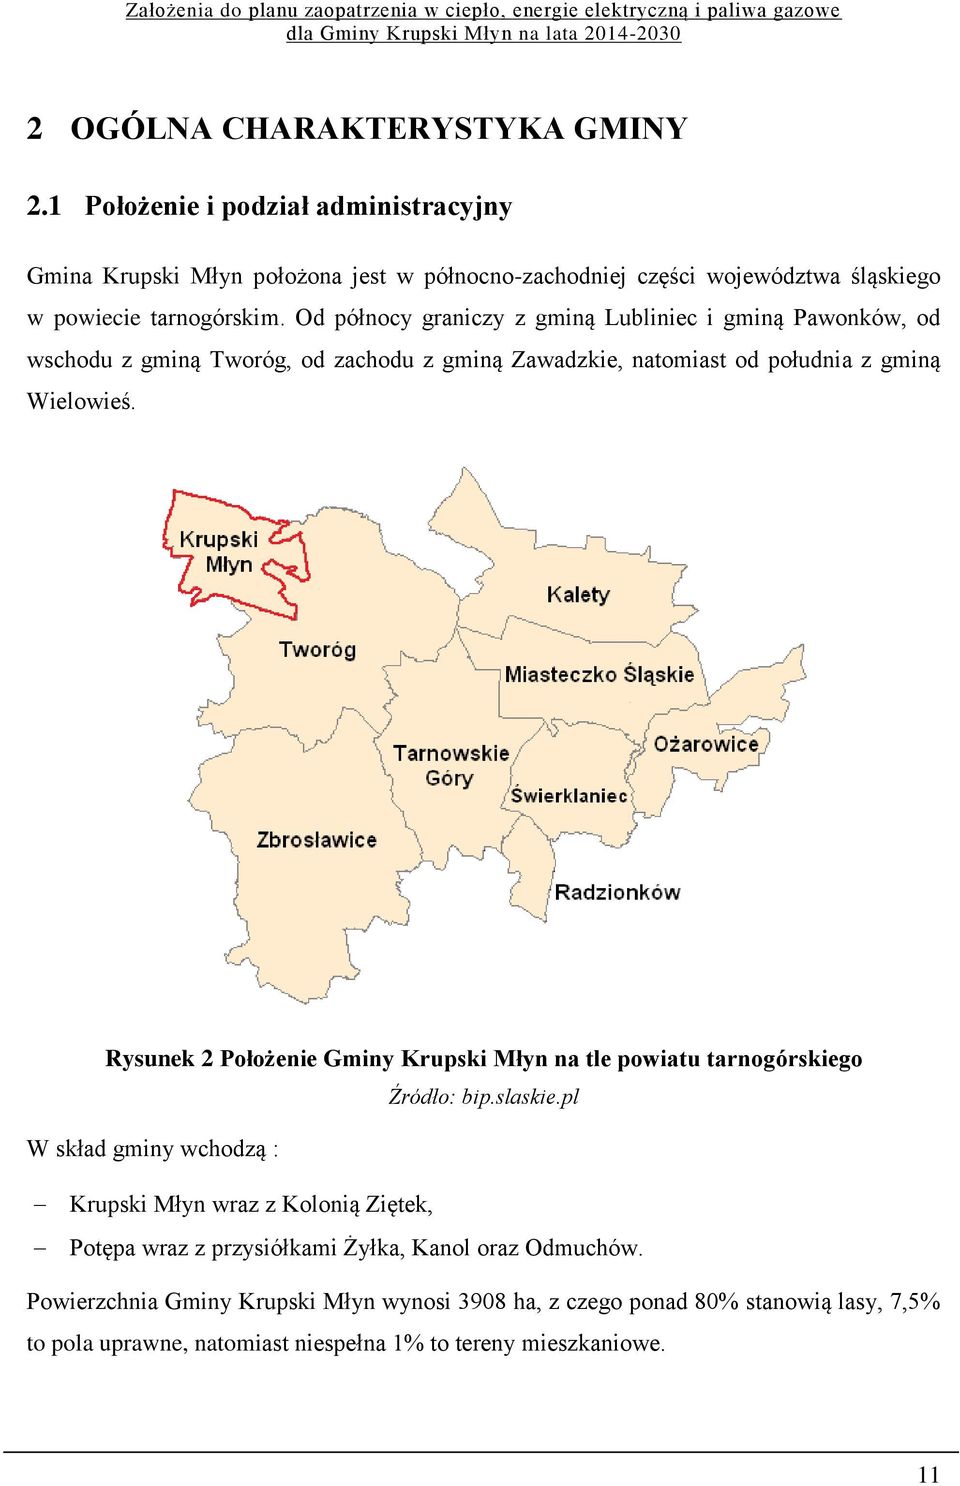 Od północy graniczy z gminą Lubliniec i gminą Pawonków, od wschodu z gminą Tworóg, od zachodu z gminą Zawadzkie, natomiast od południa z gminą Wielowieś.